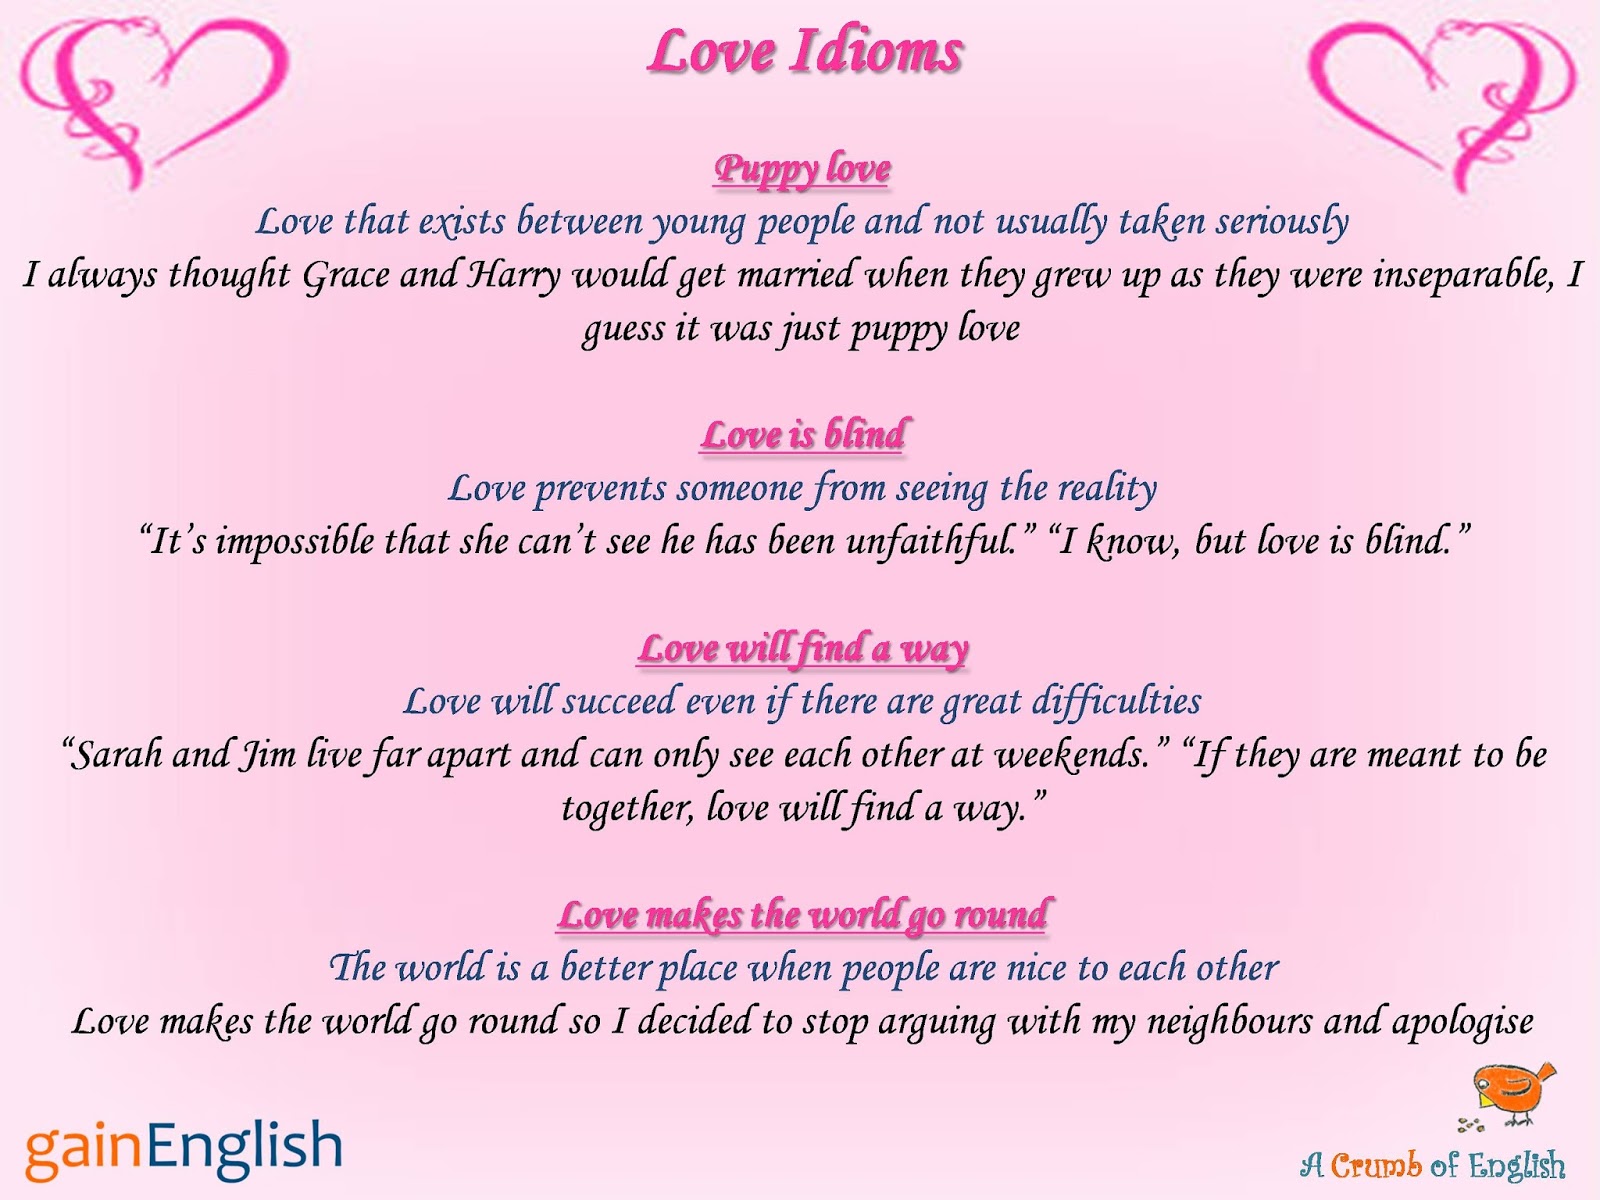 Любовь перевести на английский. Идиомы про любовь. Идиомы о любви на английском. Идиомы про любовь на английском языке. Idioms about Love.